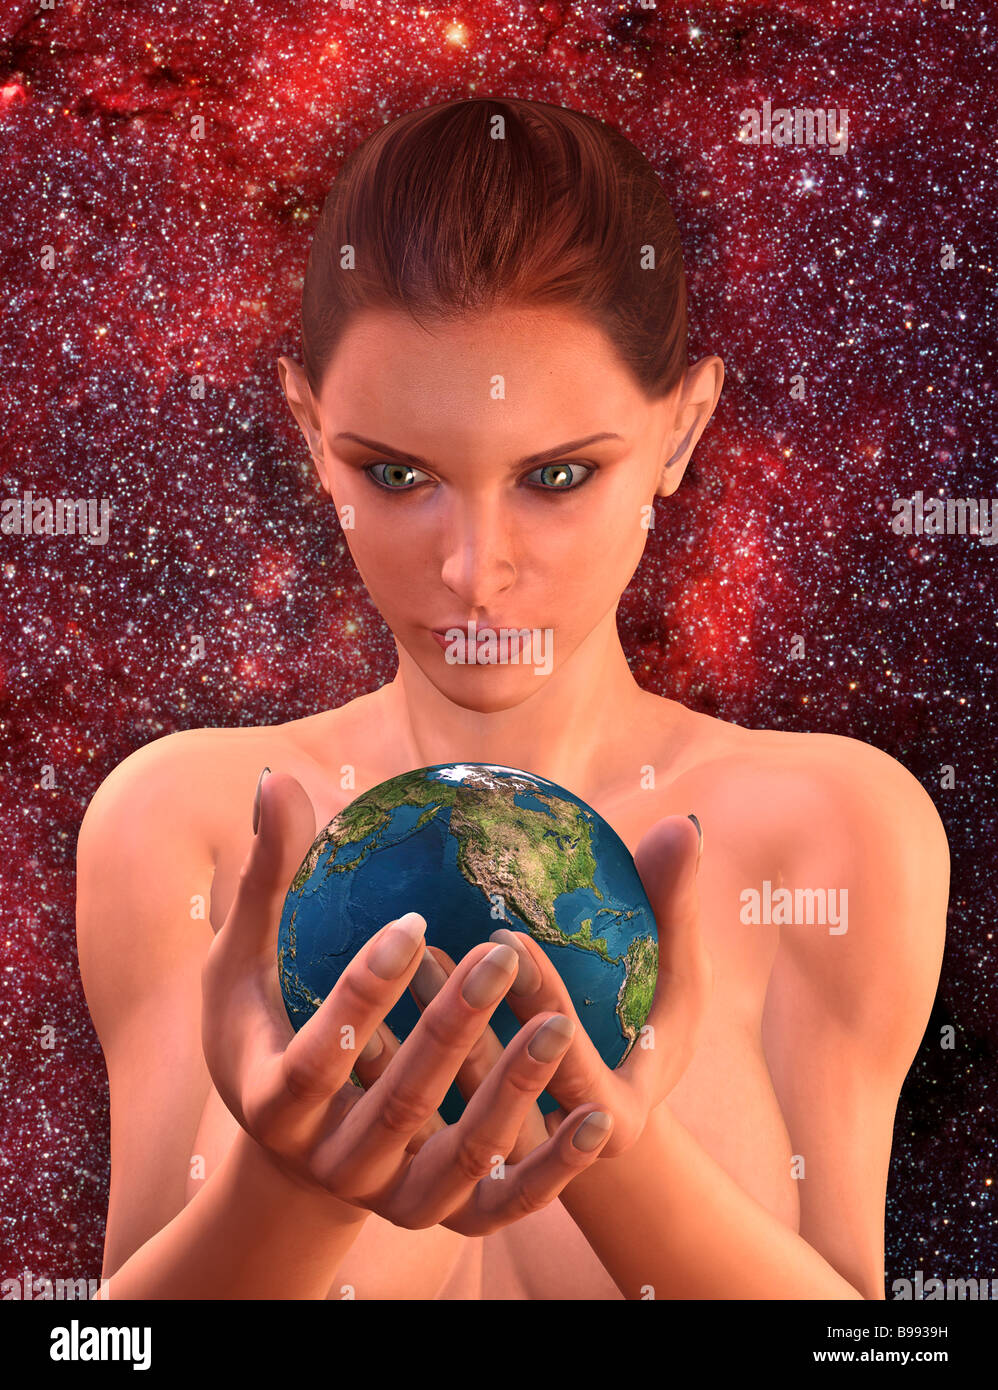 Computer immagine generata da donna figura tenendo la terra nelle sue mani indicano le nozioni di ecologia Gaia la cura per il pianeta Foto Stock